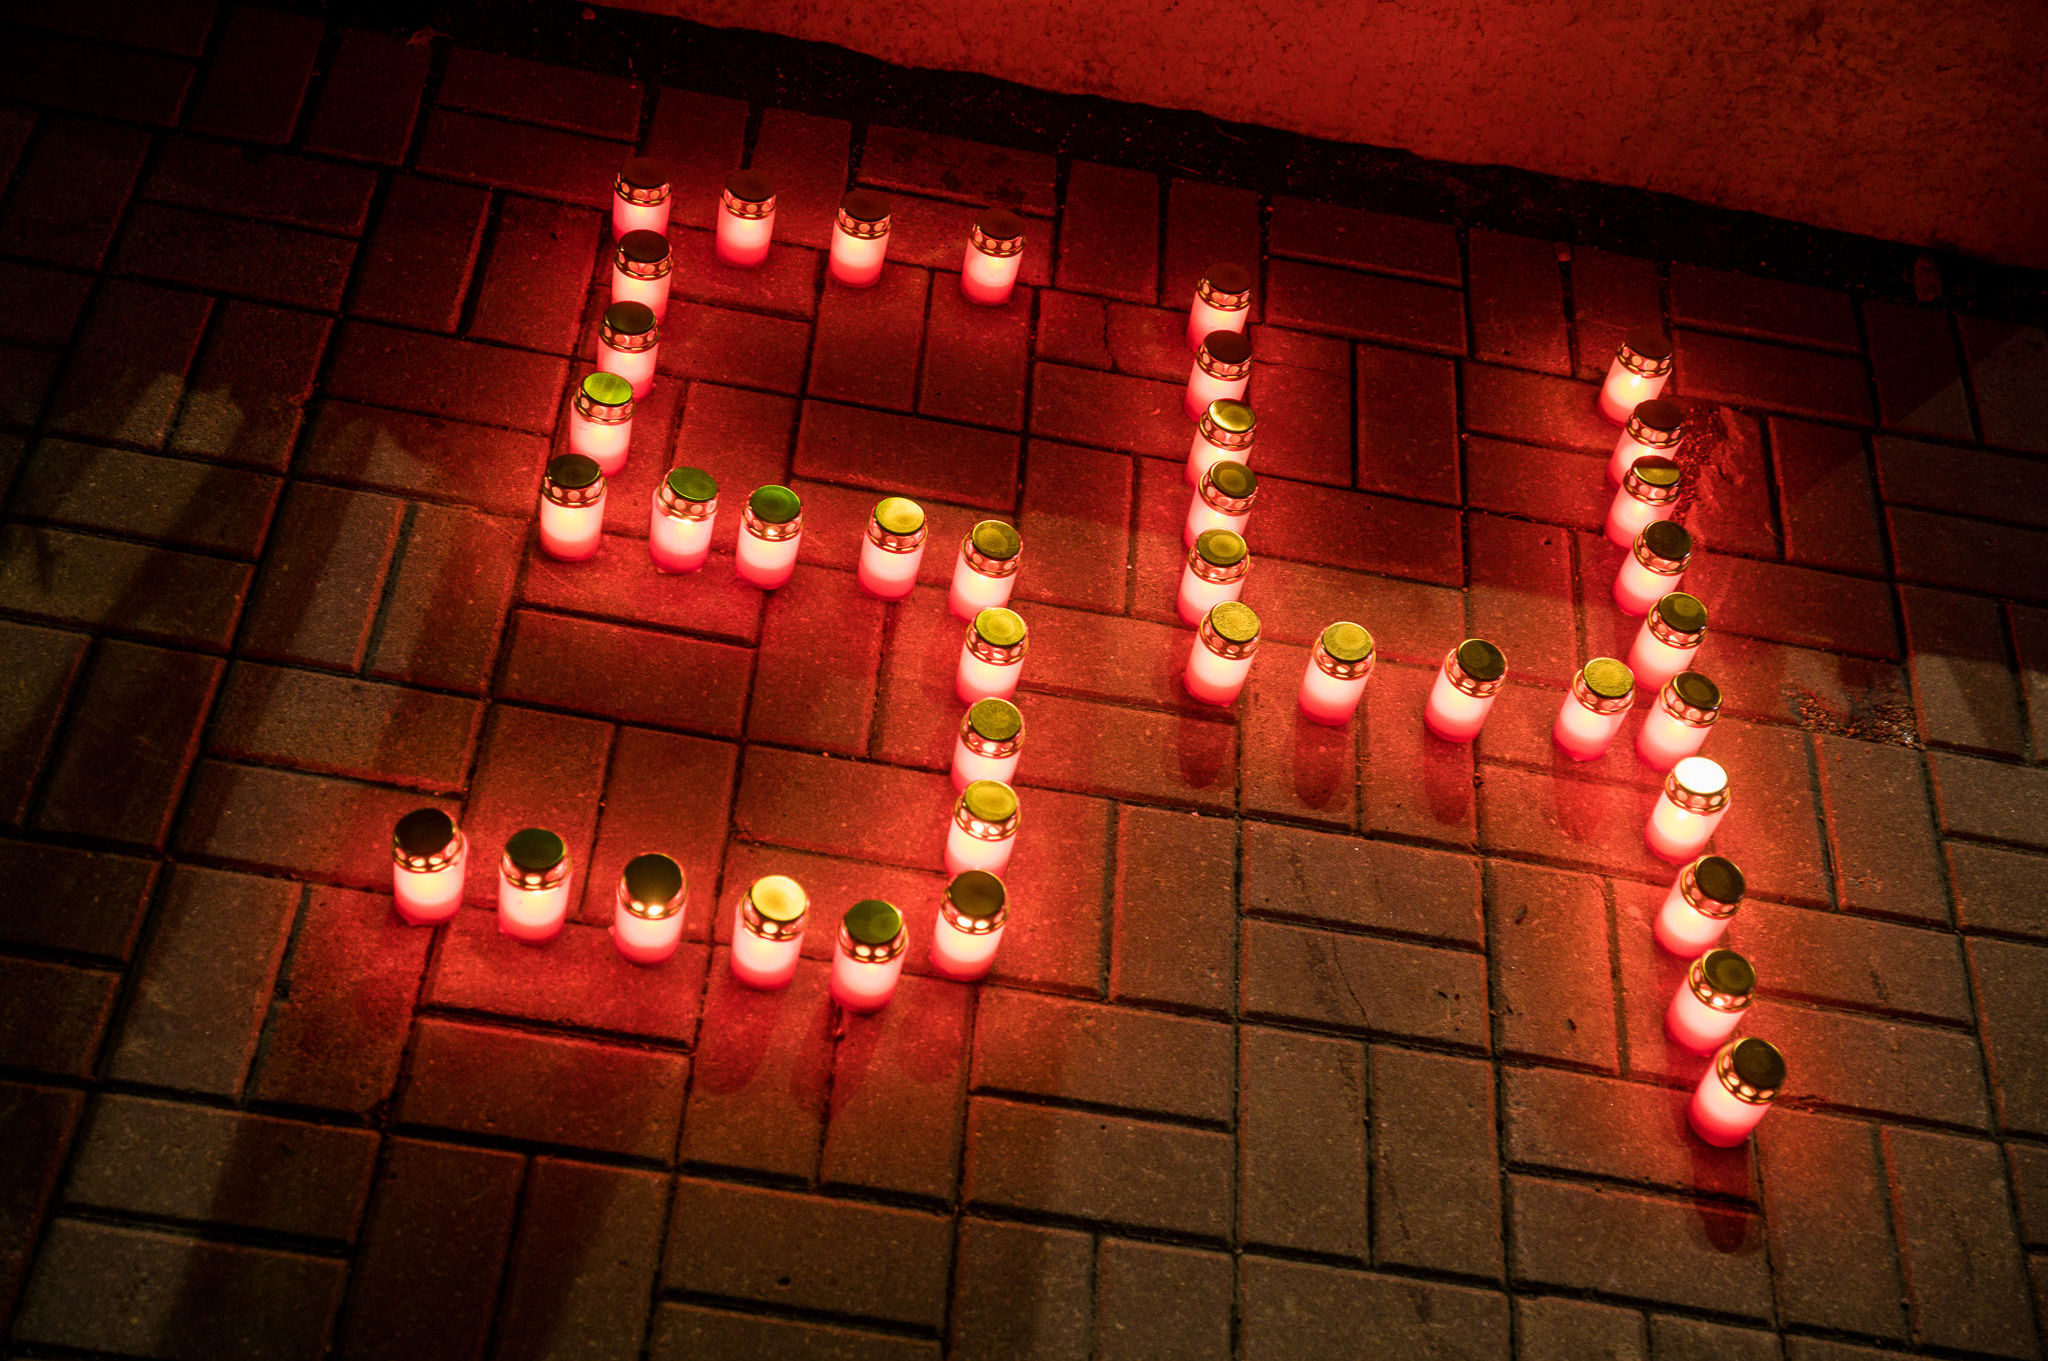 Цифра 54 из свечей - столько жертв трагедии